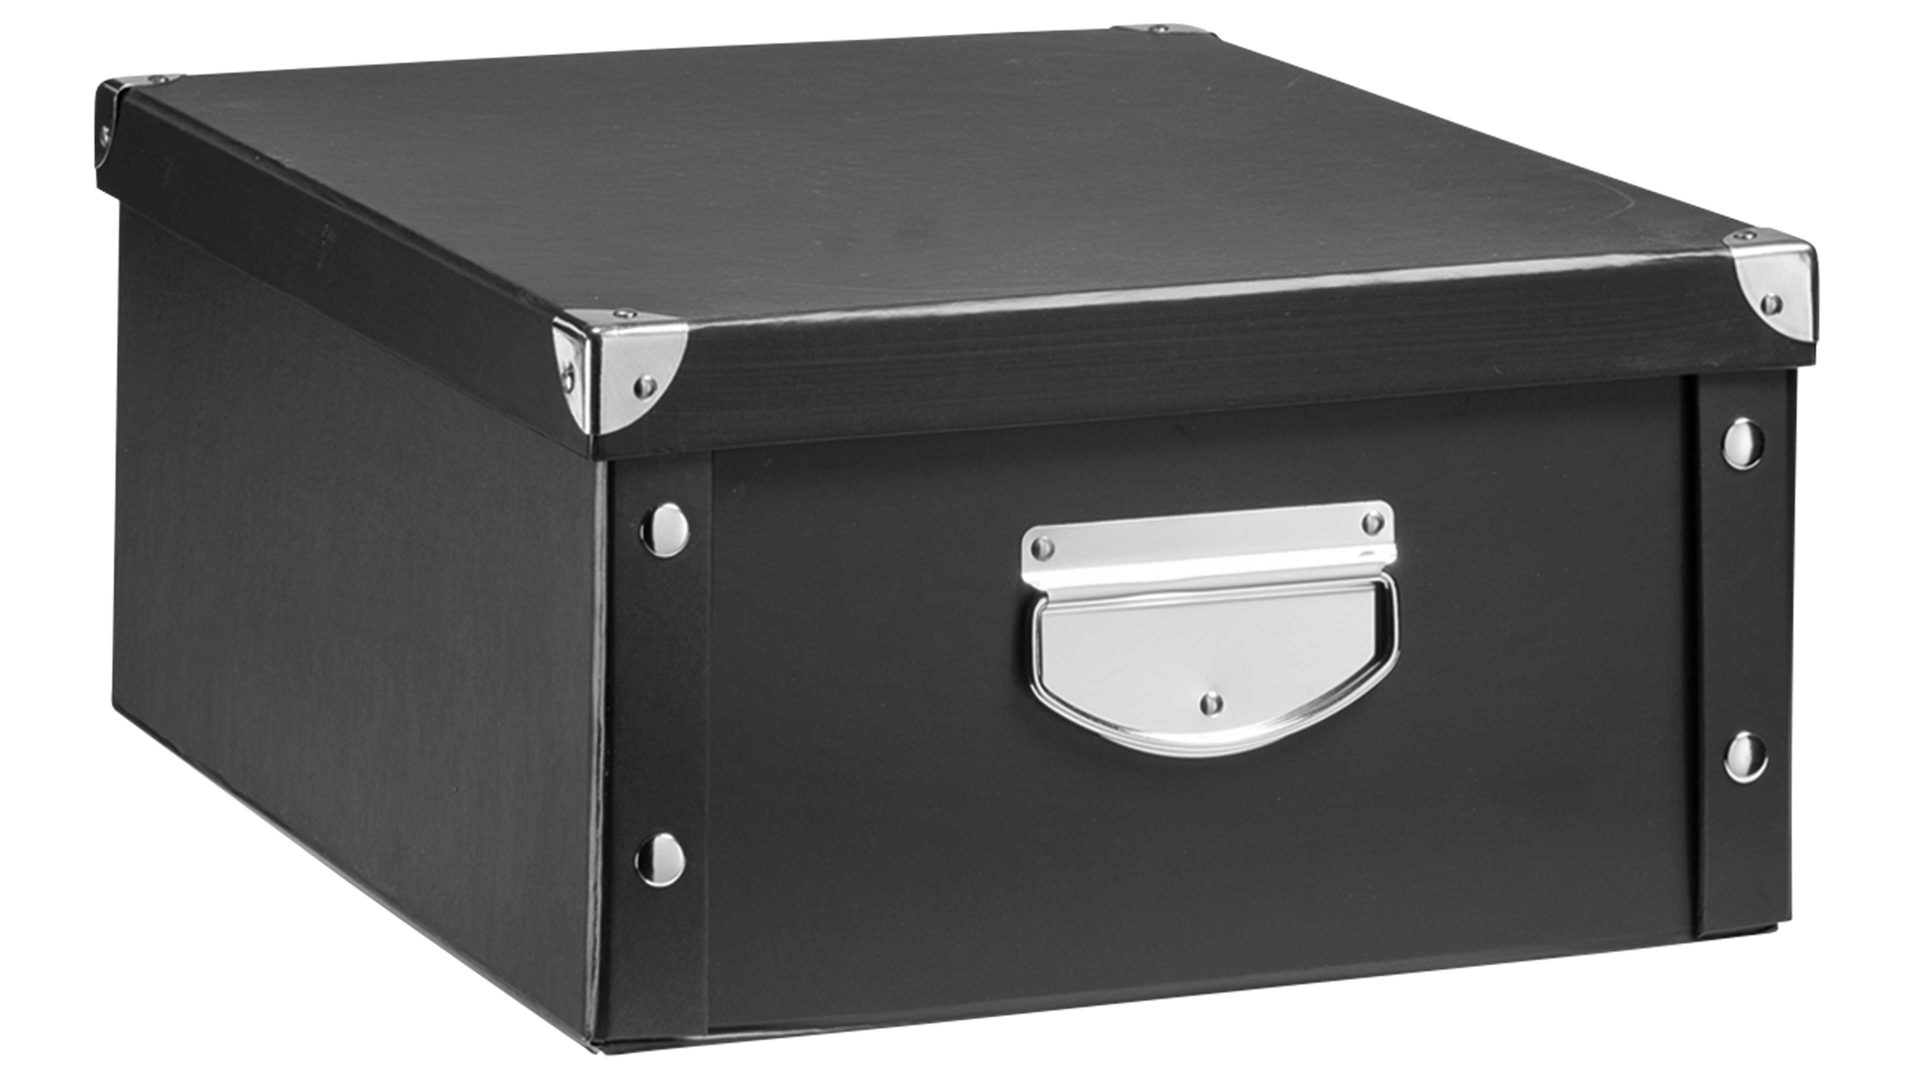 Aufbewahrungsbox Zeller present aus Karton / Papier / Pappe in Schwarz zeller Aufbewahrungsbox schwarze Pappe - ca. 33 x 40 cm